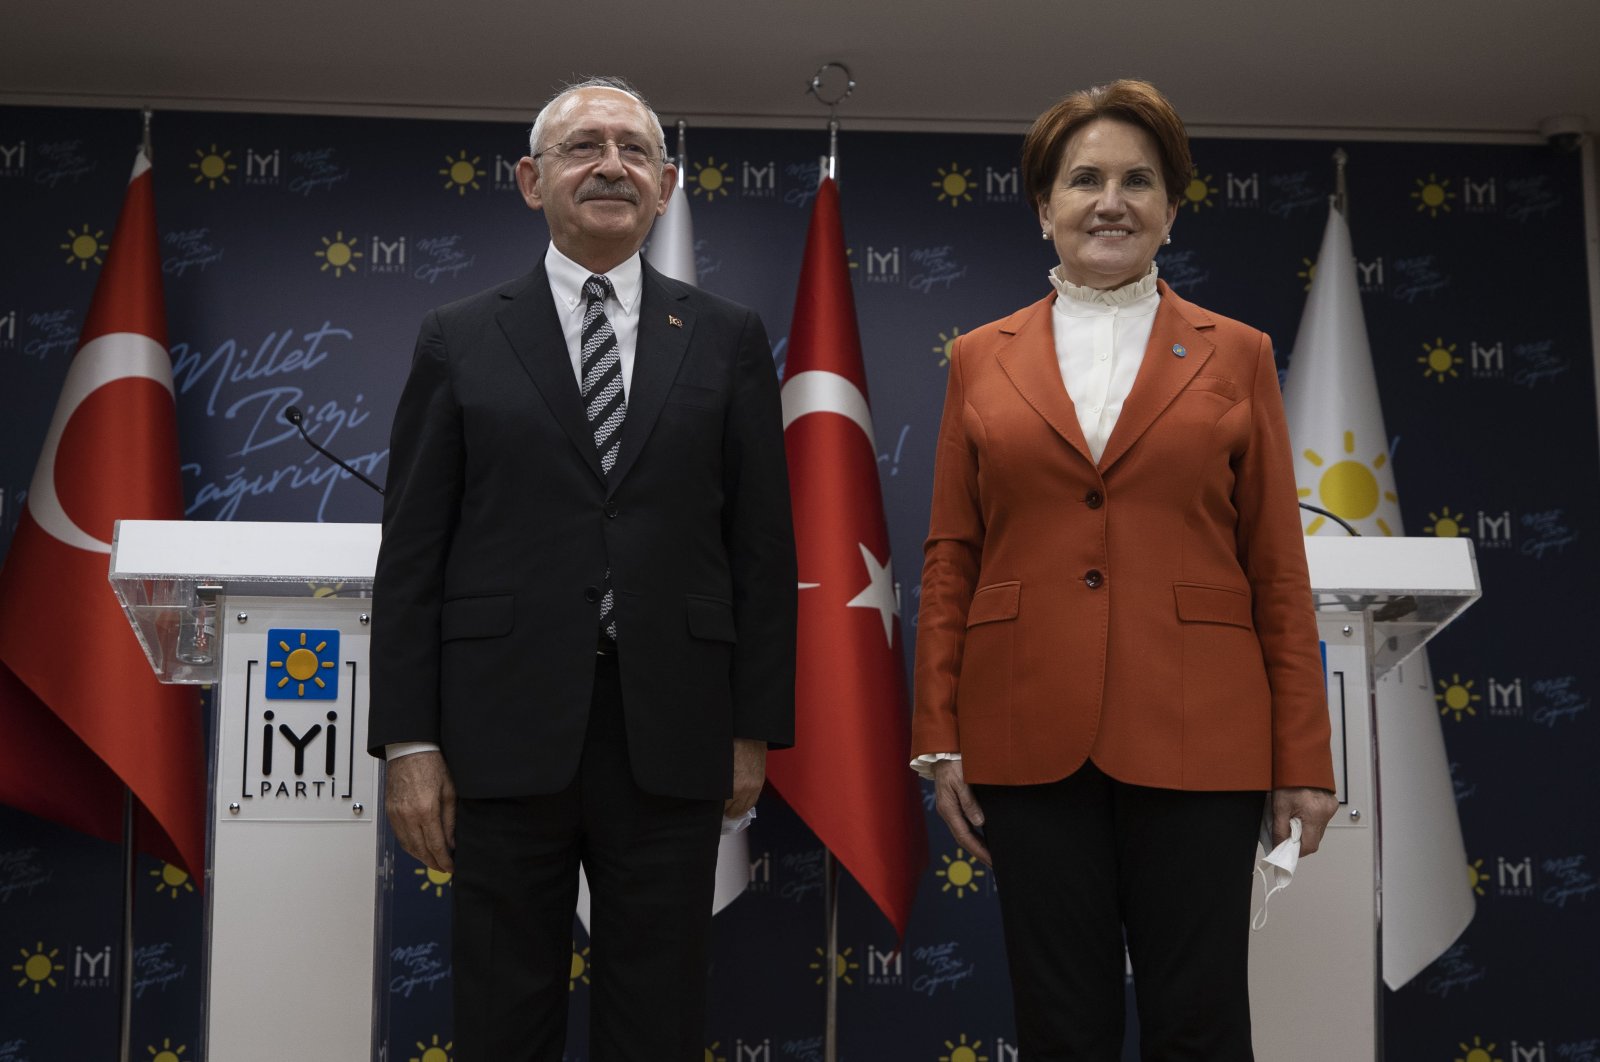 CHP leader Kemal Kılıçdaroğlu poses with IP leader Meral Akşener after a meeting in the capital Ankara, Türkiye, Nov. 19, 2021. (AA Photo)